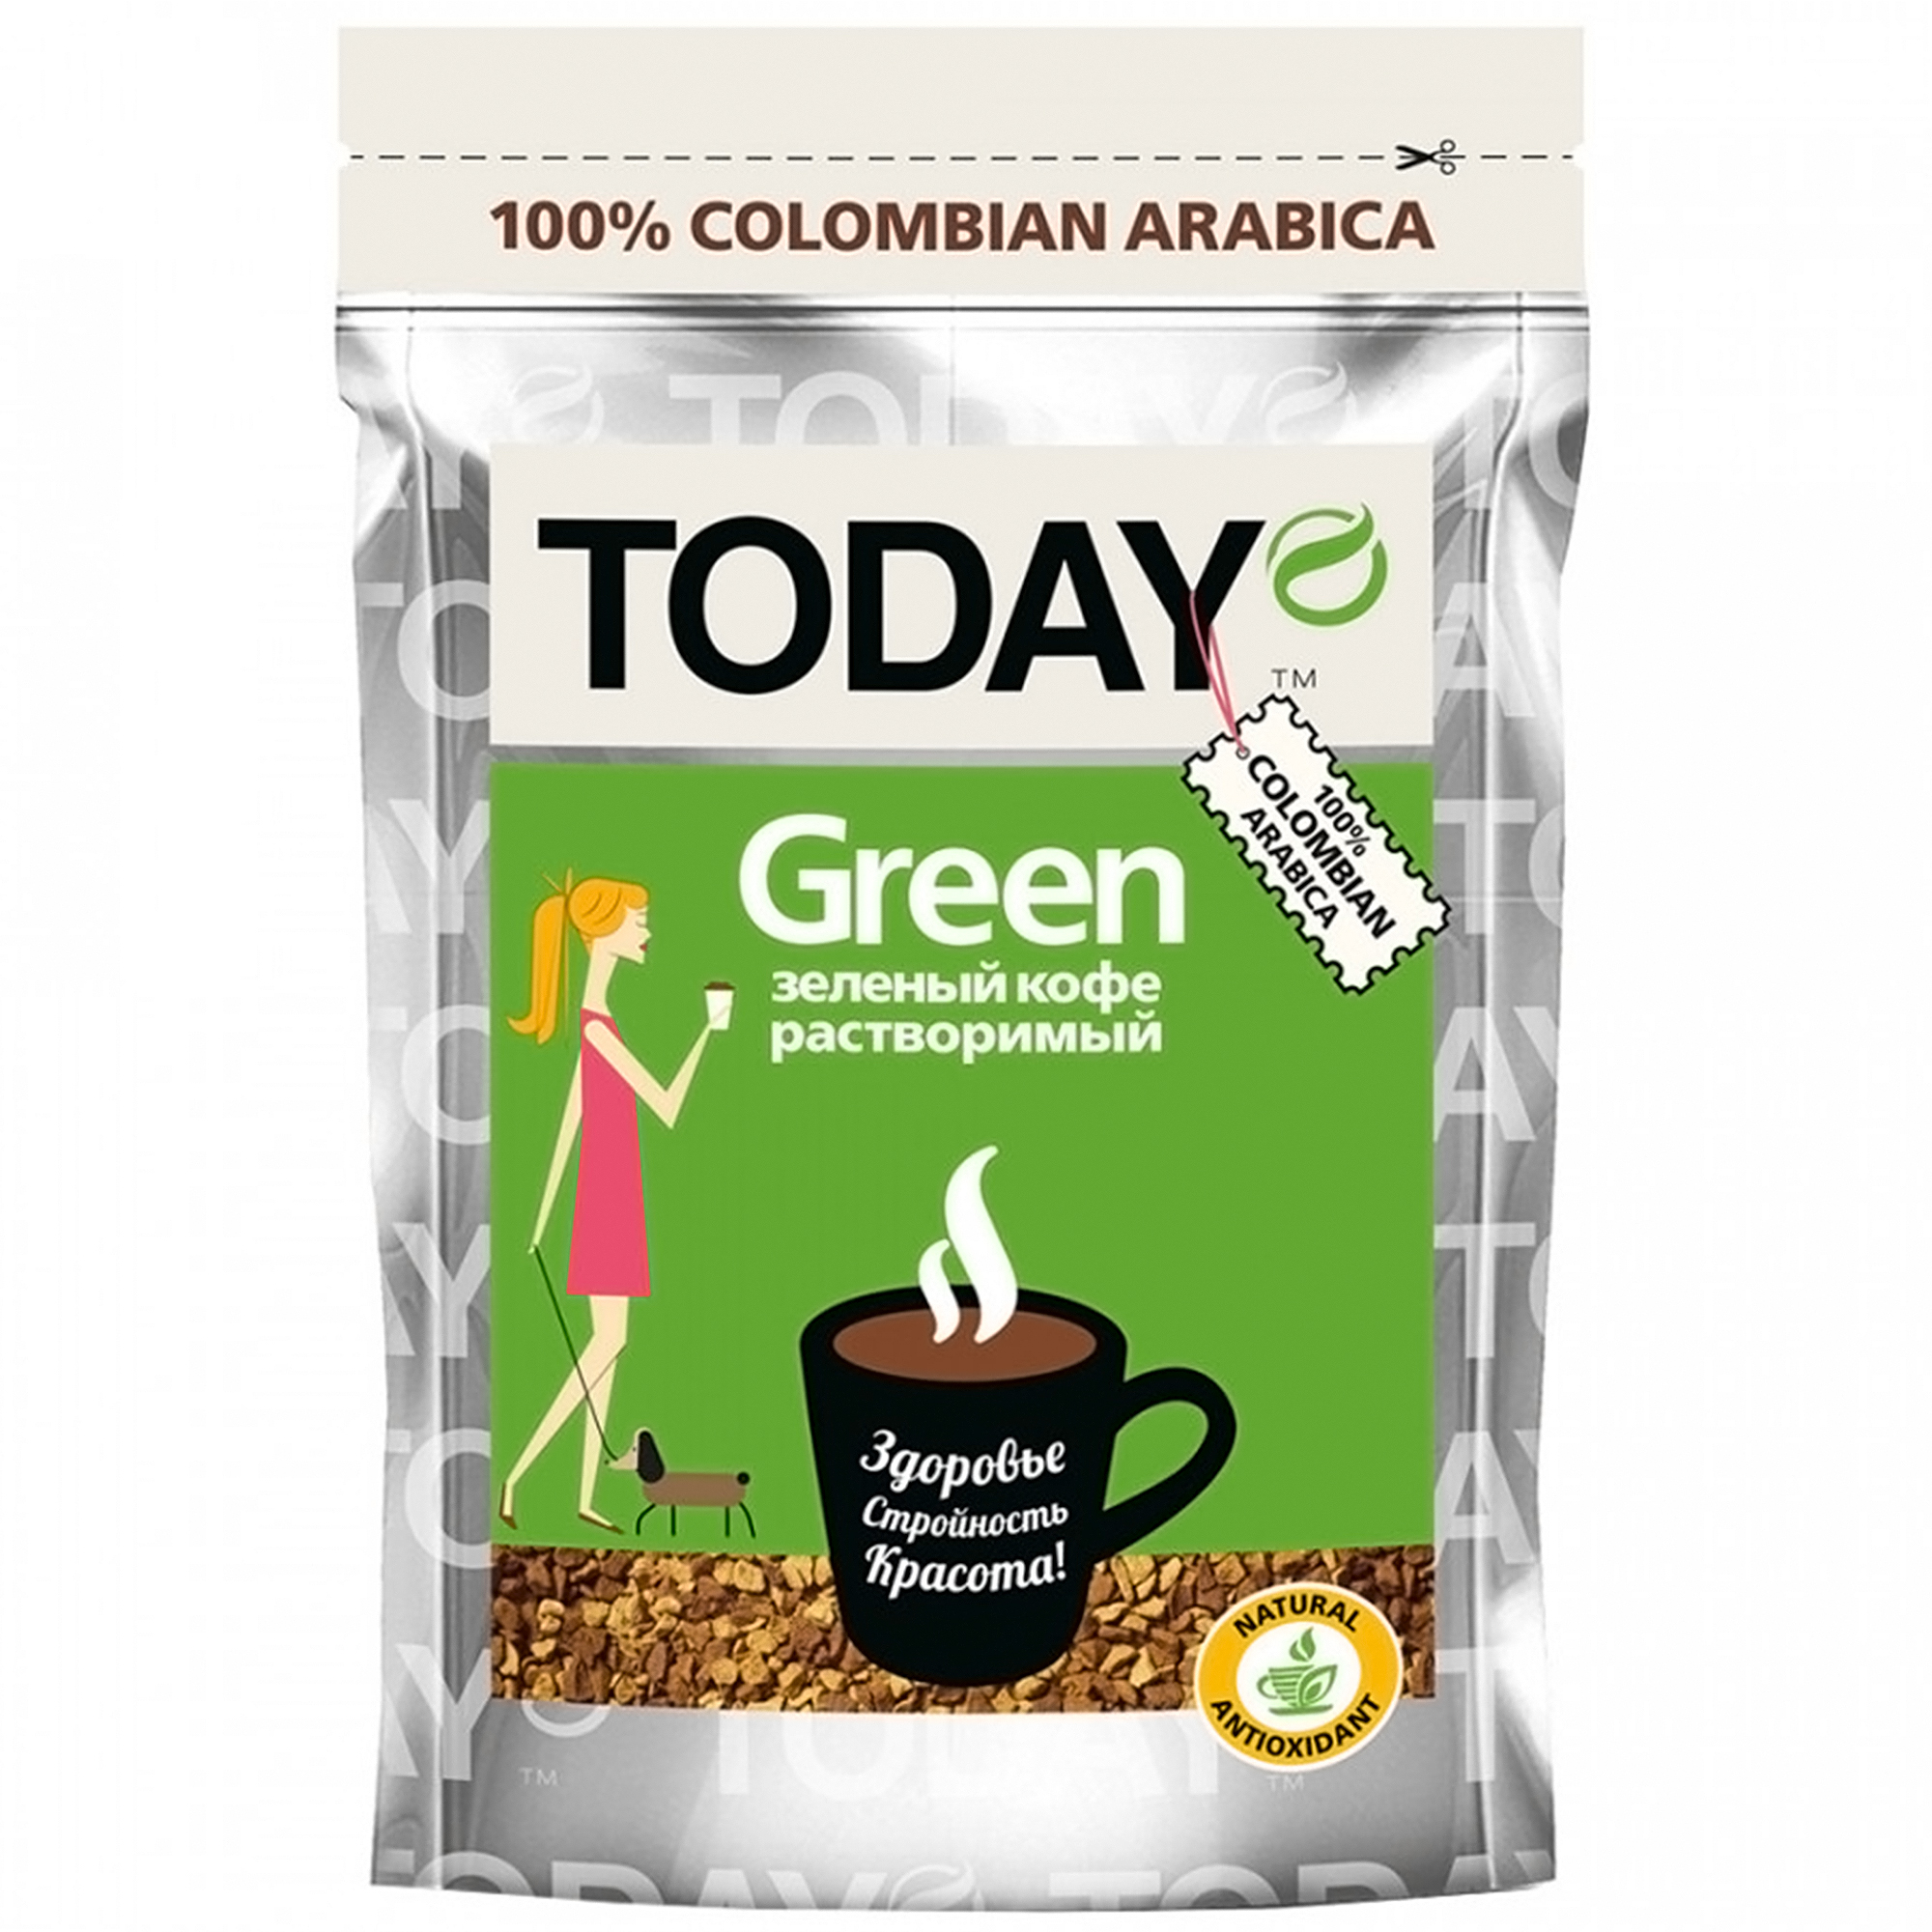 Кофе Today Green растворимый сублимированный, 75 г кофе brai gran ассорти натуральный жареный в дрип пакете 10 шт по 8 гр